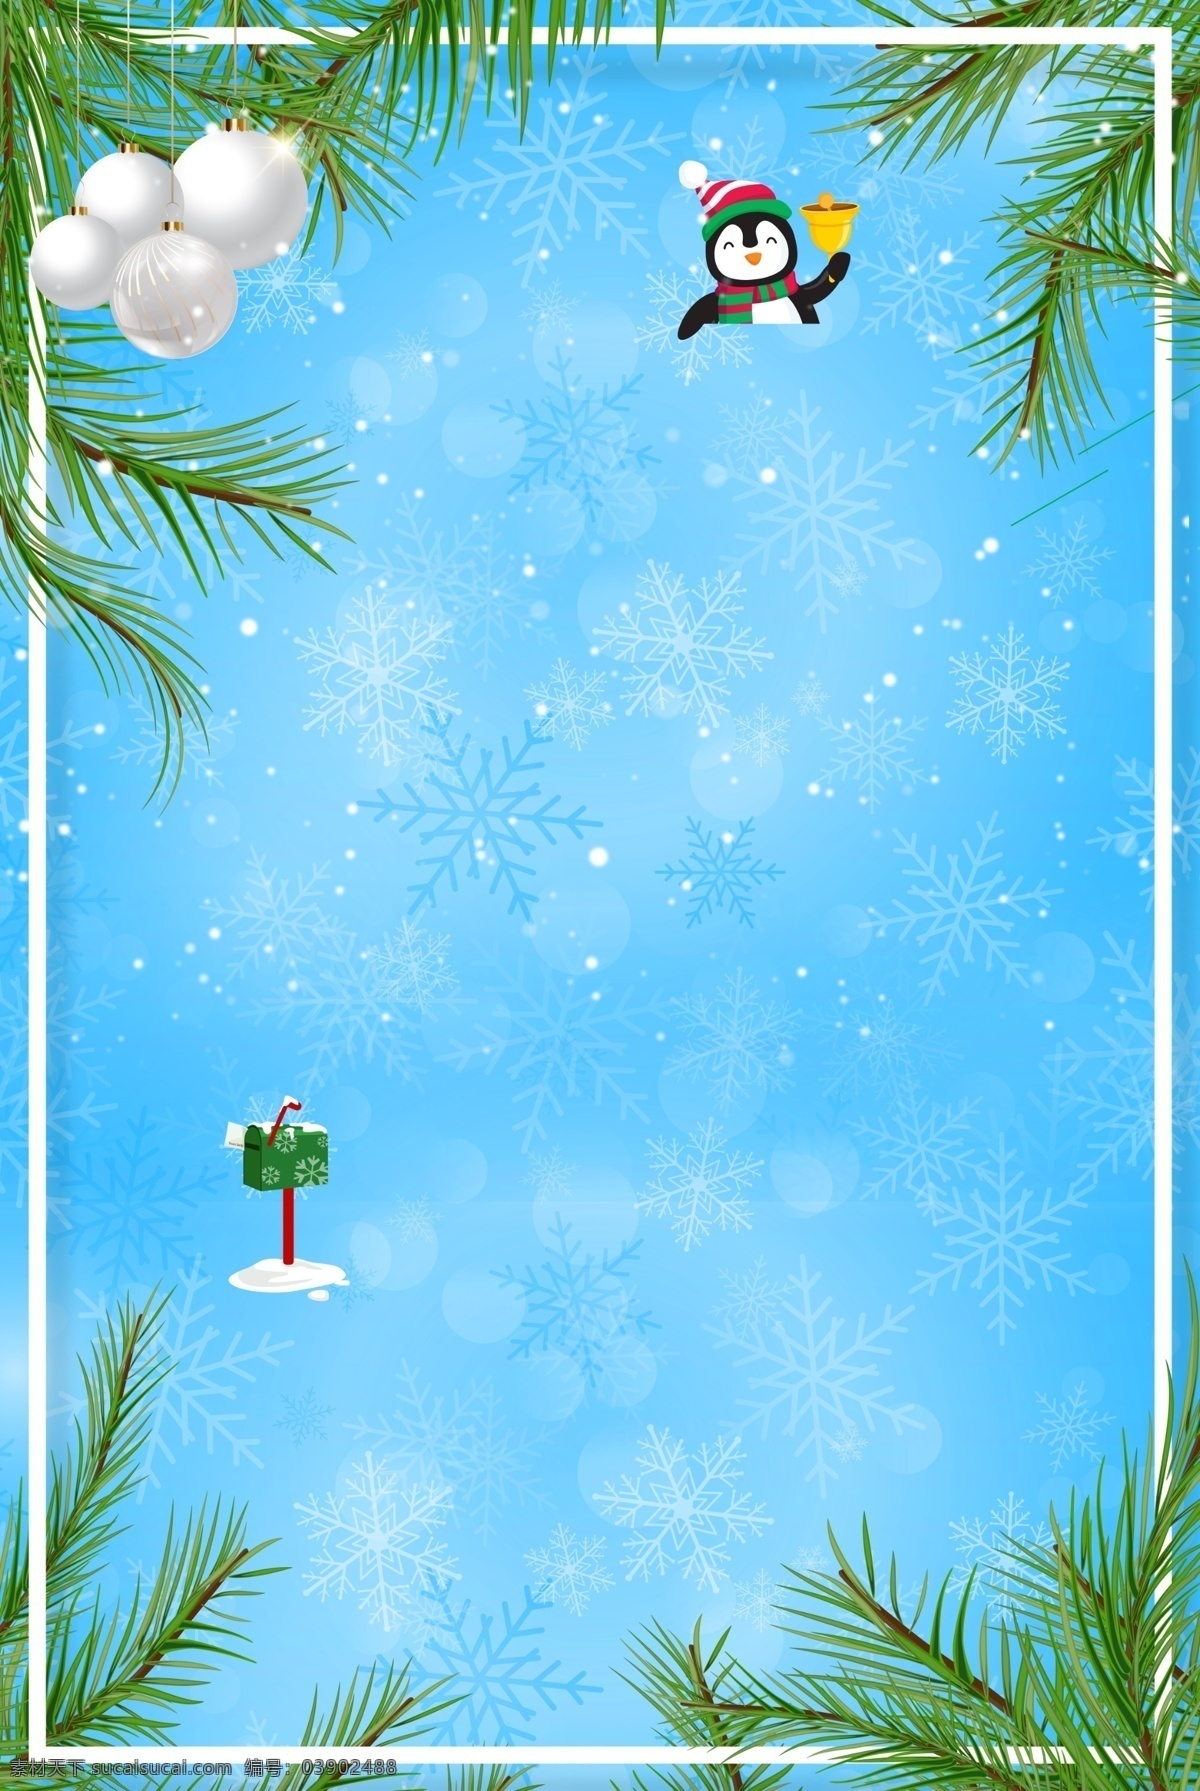 蓝色 唯美 冬季 清新 雪地 卡通 广告 背景 图 绿叶 风景 叶子 秋冬季 雪人 手绘 风车